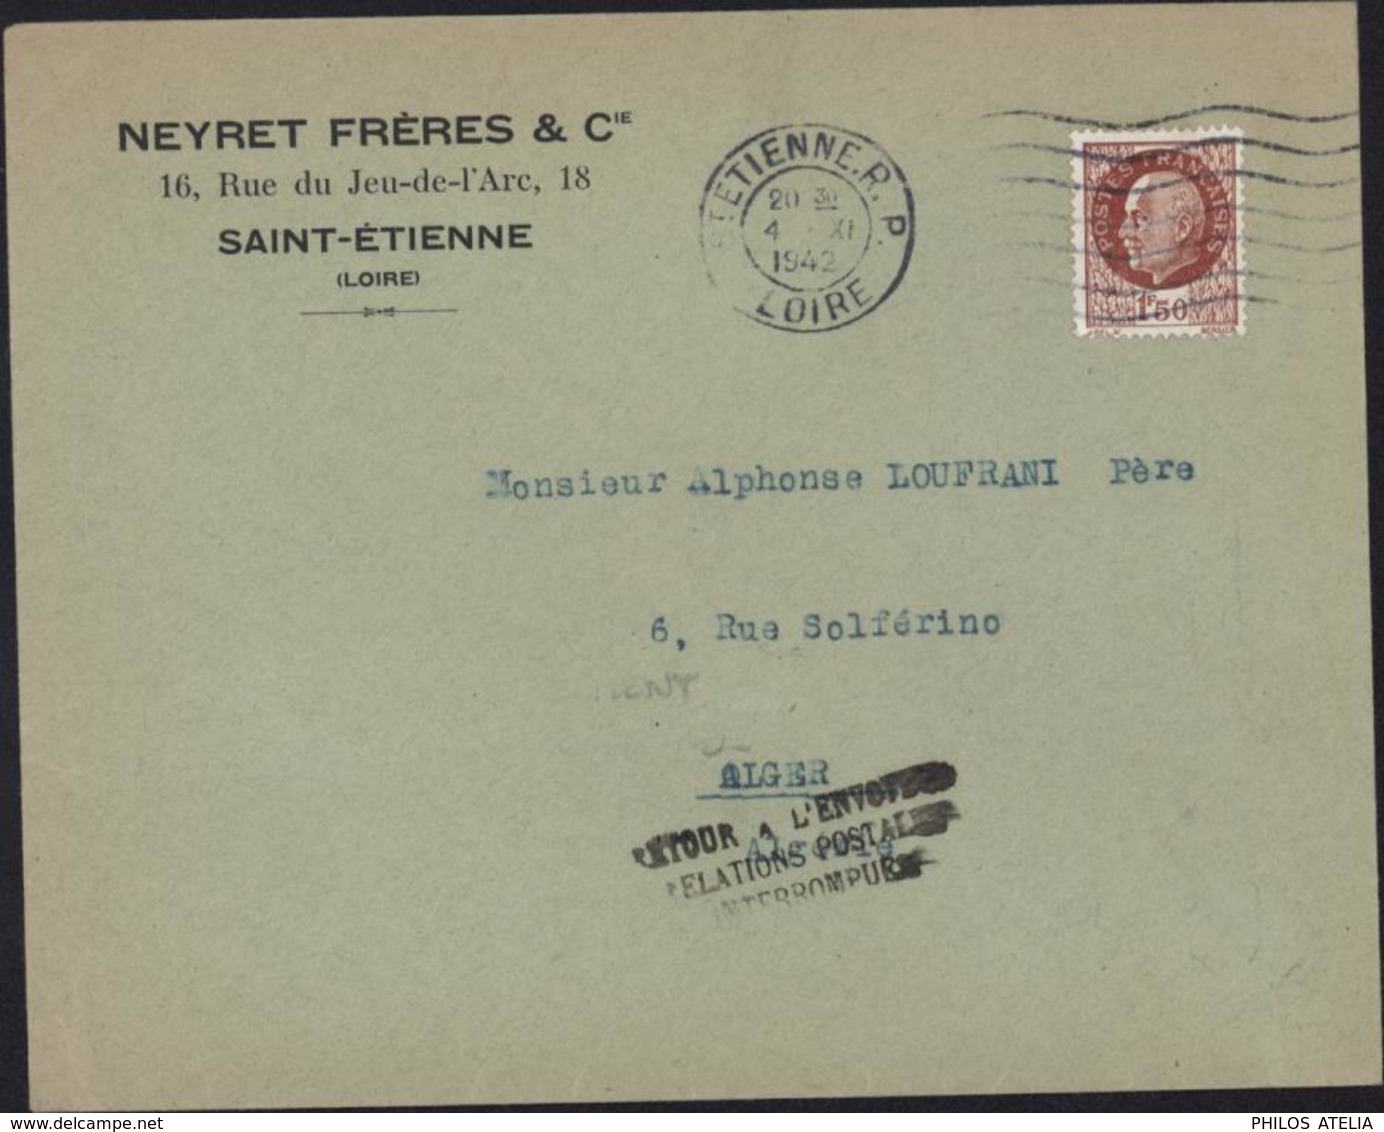 Guerre 39 YT 517 CAD St Etienne 4 XI 1942 Cachet Retour Envoyeur Relations Postales Interrompues Débarquement Alliés AFN - Guerra De 1939-45